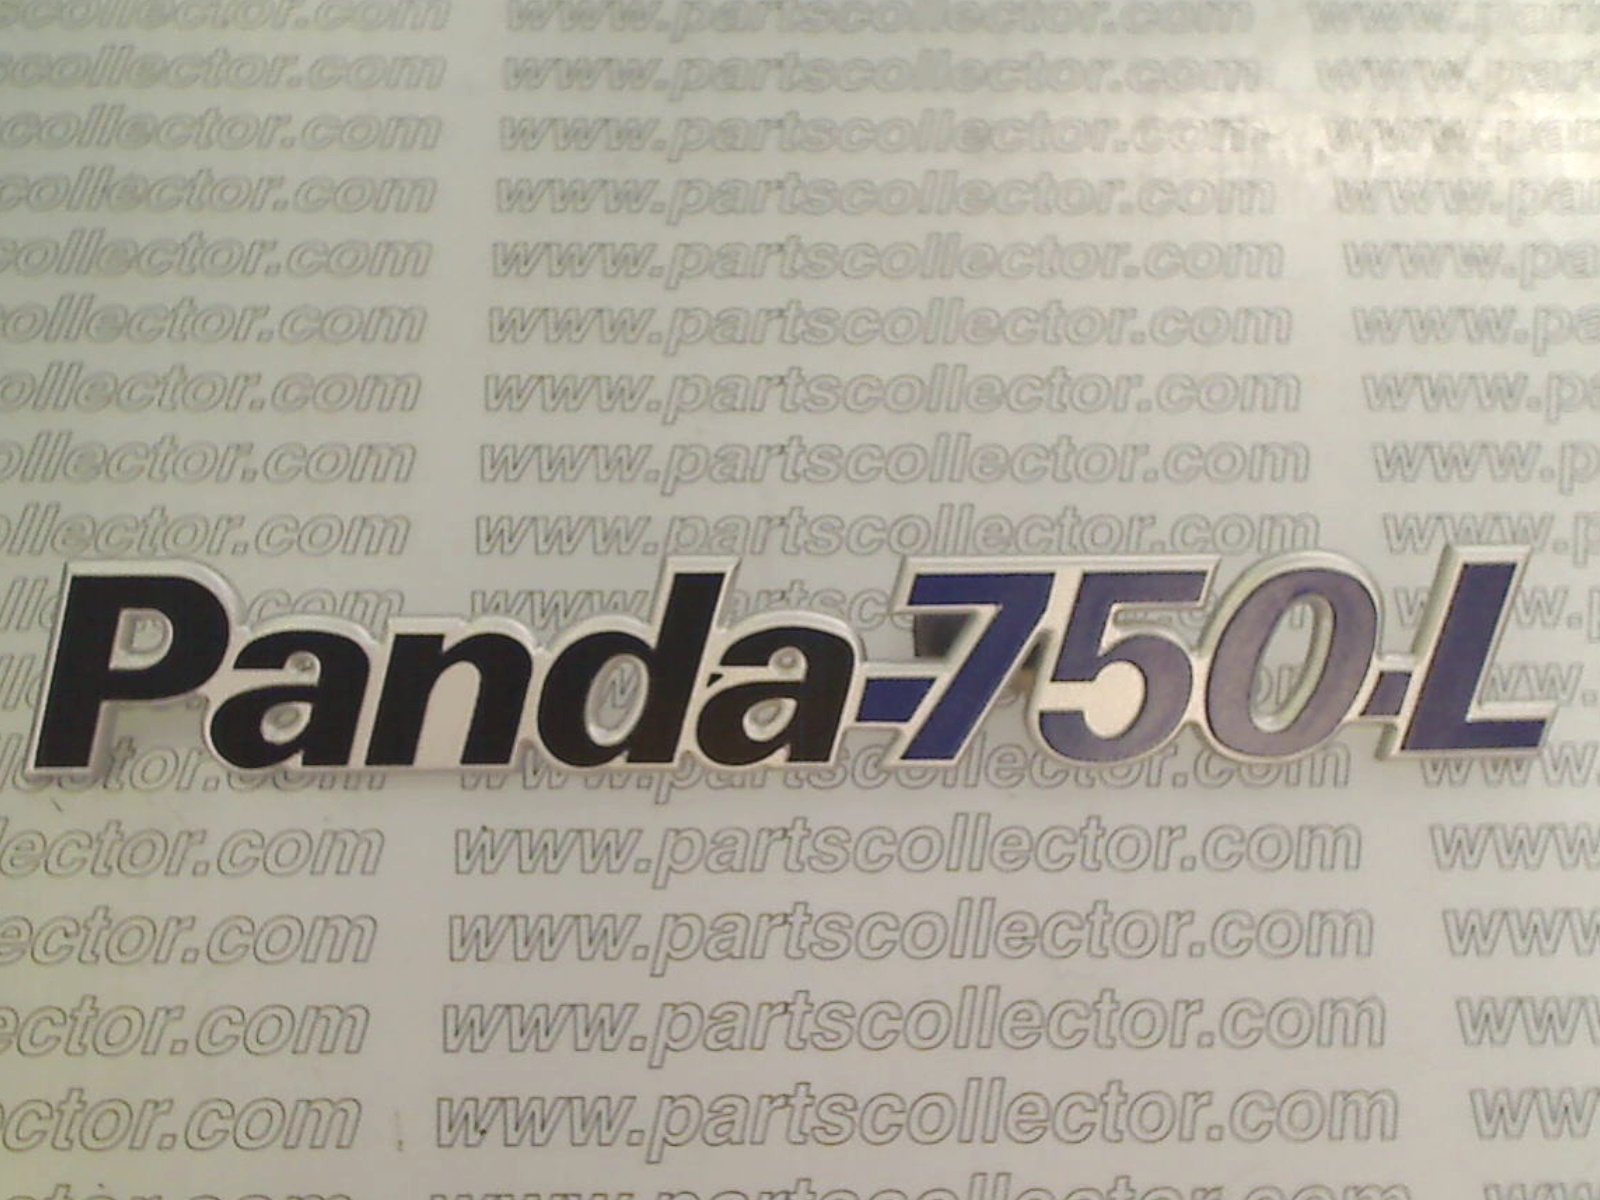 PANDA 750 L EMBLEM